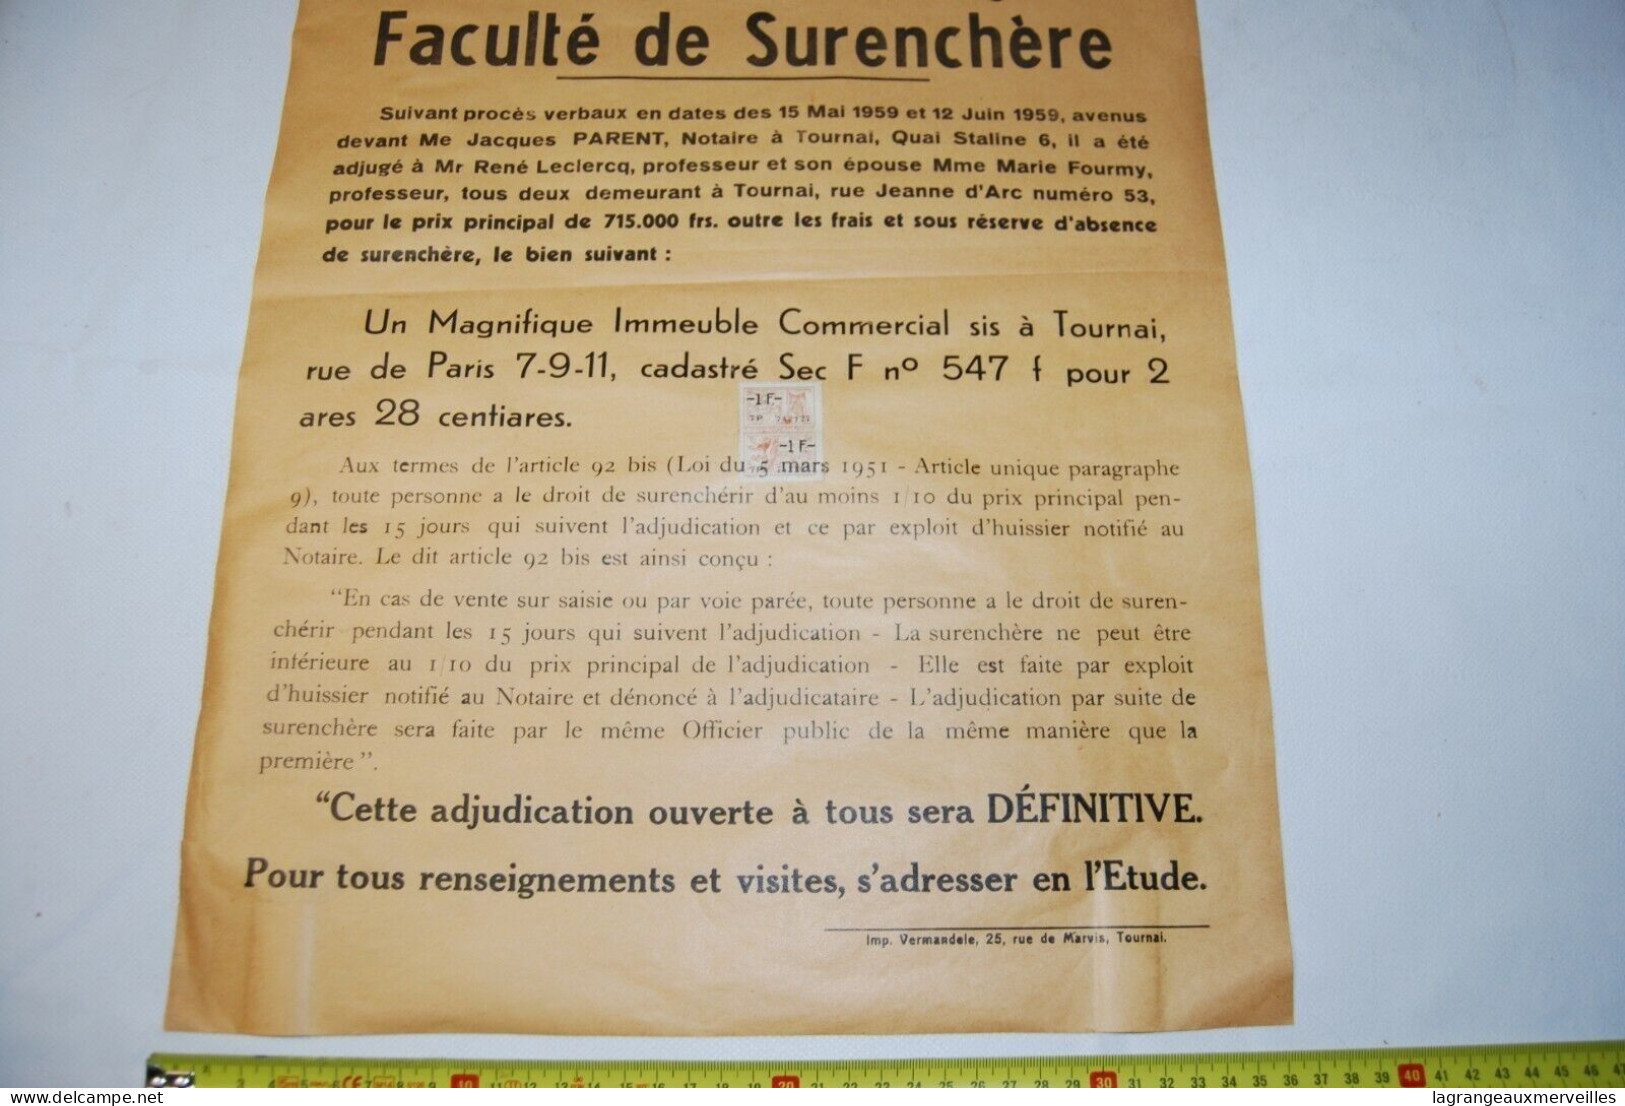 AF1 Affiche - Vente Publique Notaire - Tournai - Notaire Gérard - 1959 N°2 - Posters